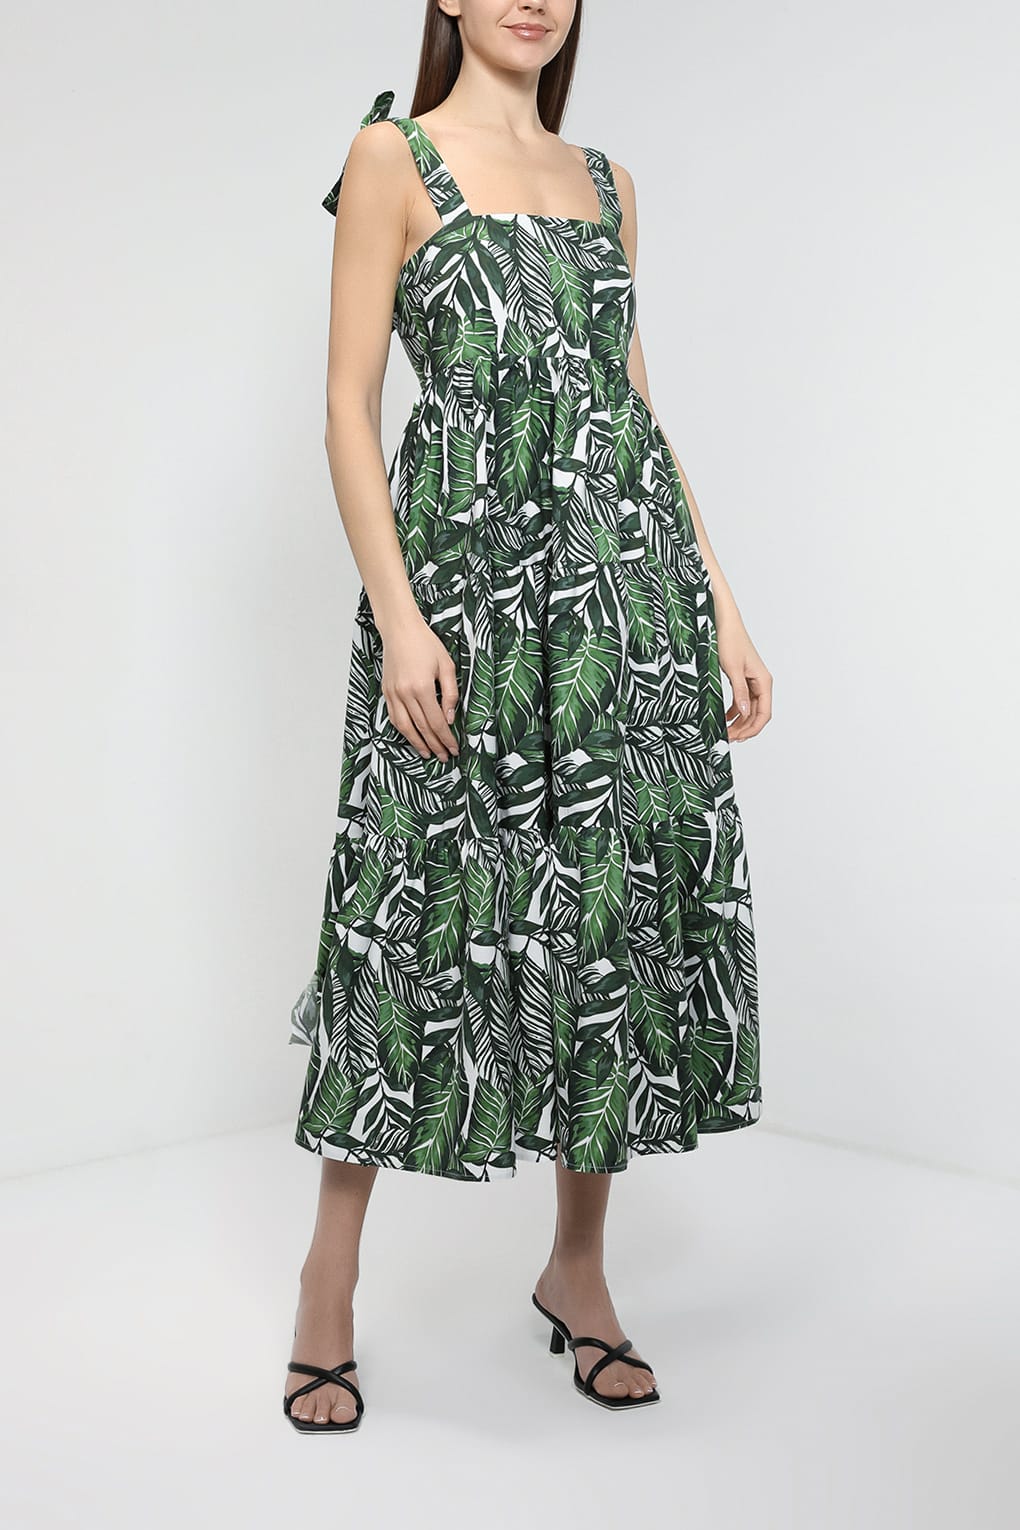 Платье женское Belucci BL23045251 зеленое XL